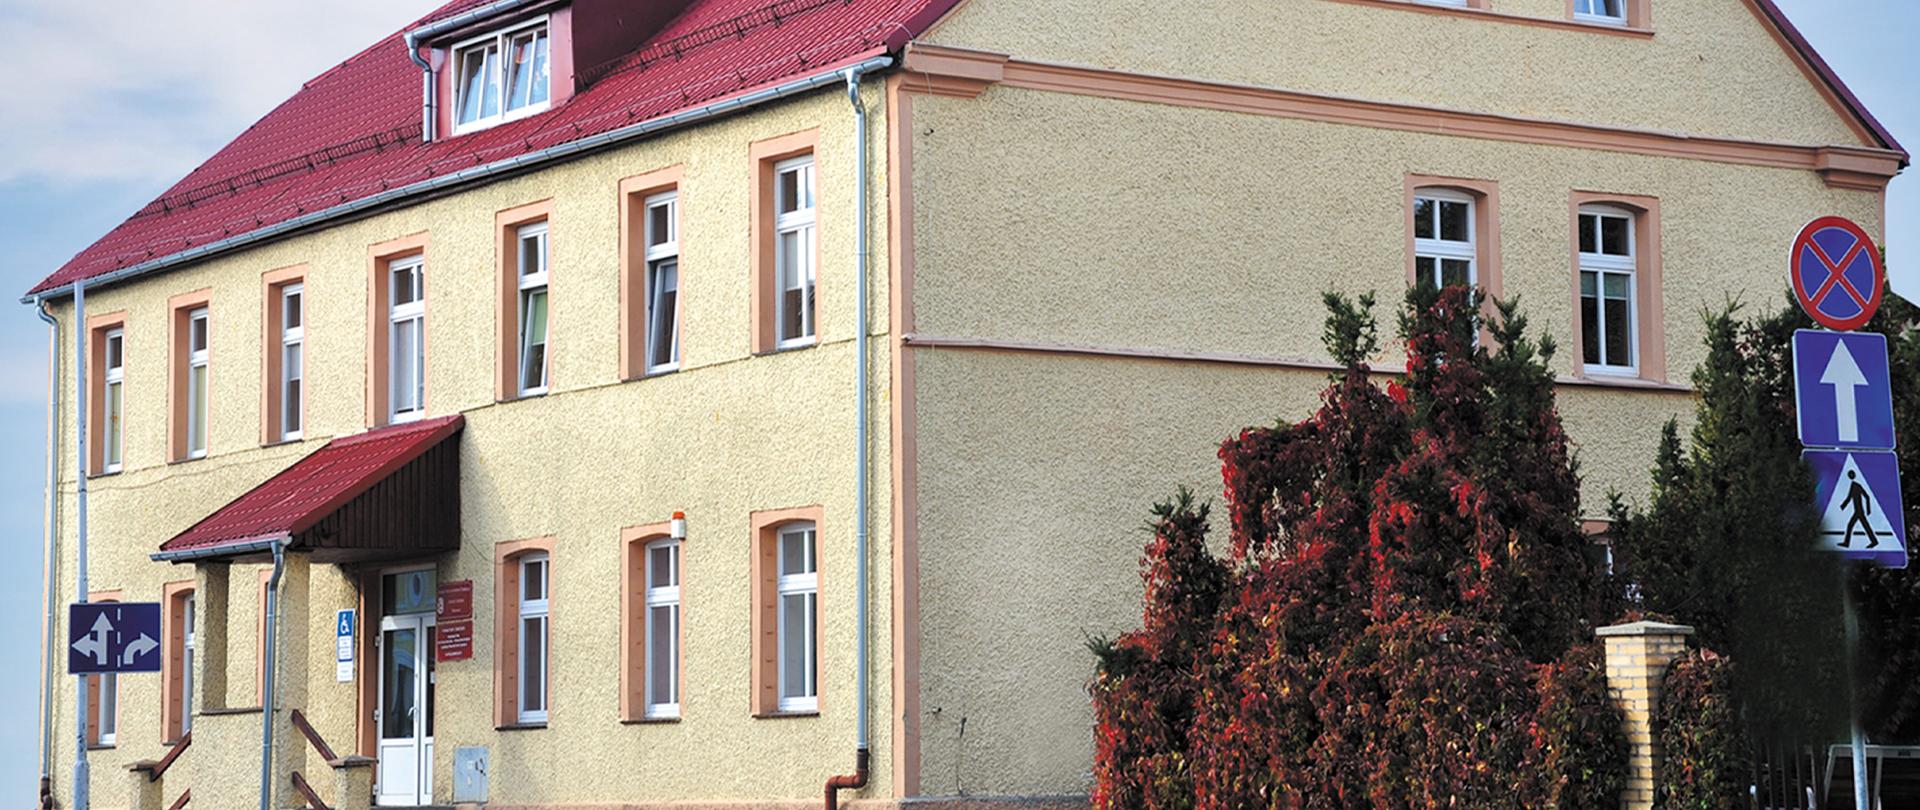 Na zdjęciu widoczny budynek - siedziba Ośrodka w kolorze żółtym z czerwonym dachem